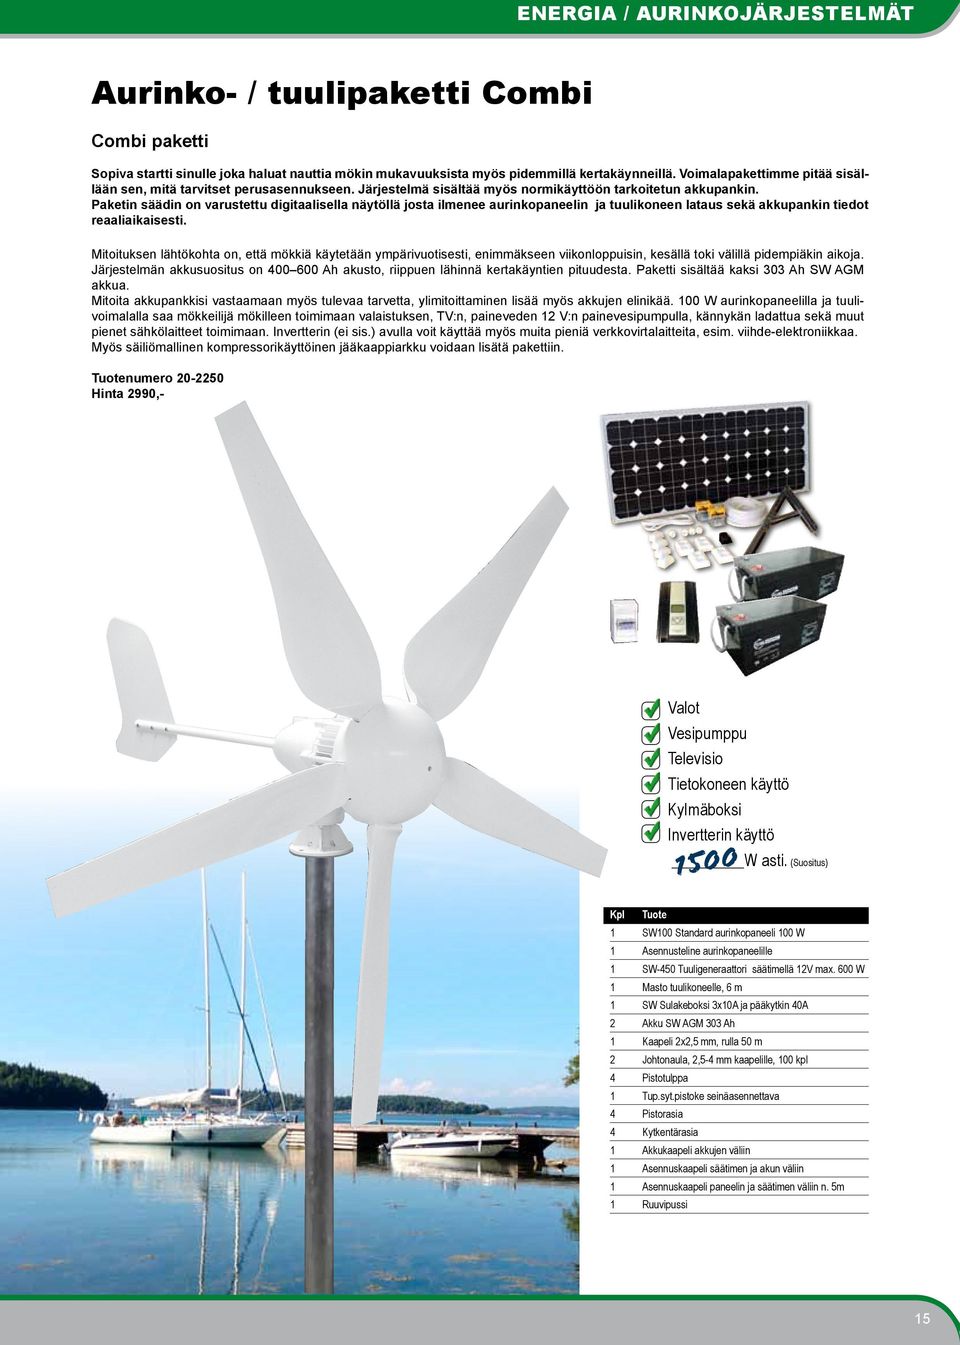 Paketin säädin on varustettu digitaalisella näytöllä josta ilmenee aurinkopaneelin ja tuulikoneen lataus sekä akkupankin tiedot reaaliaikaisesti.